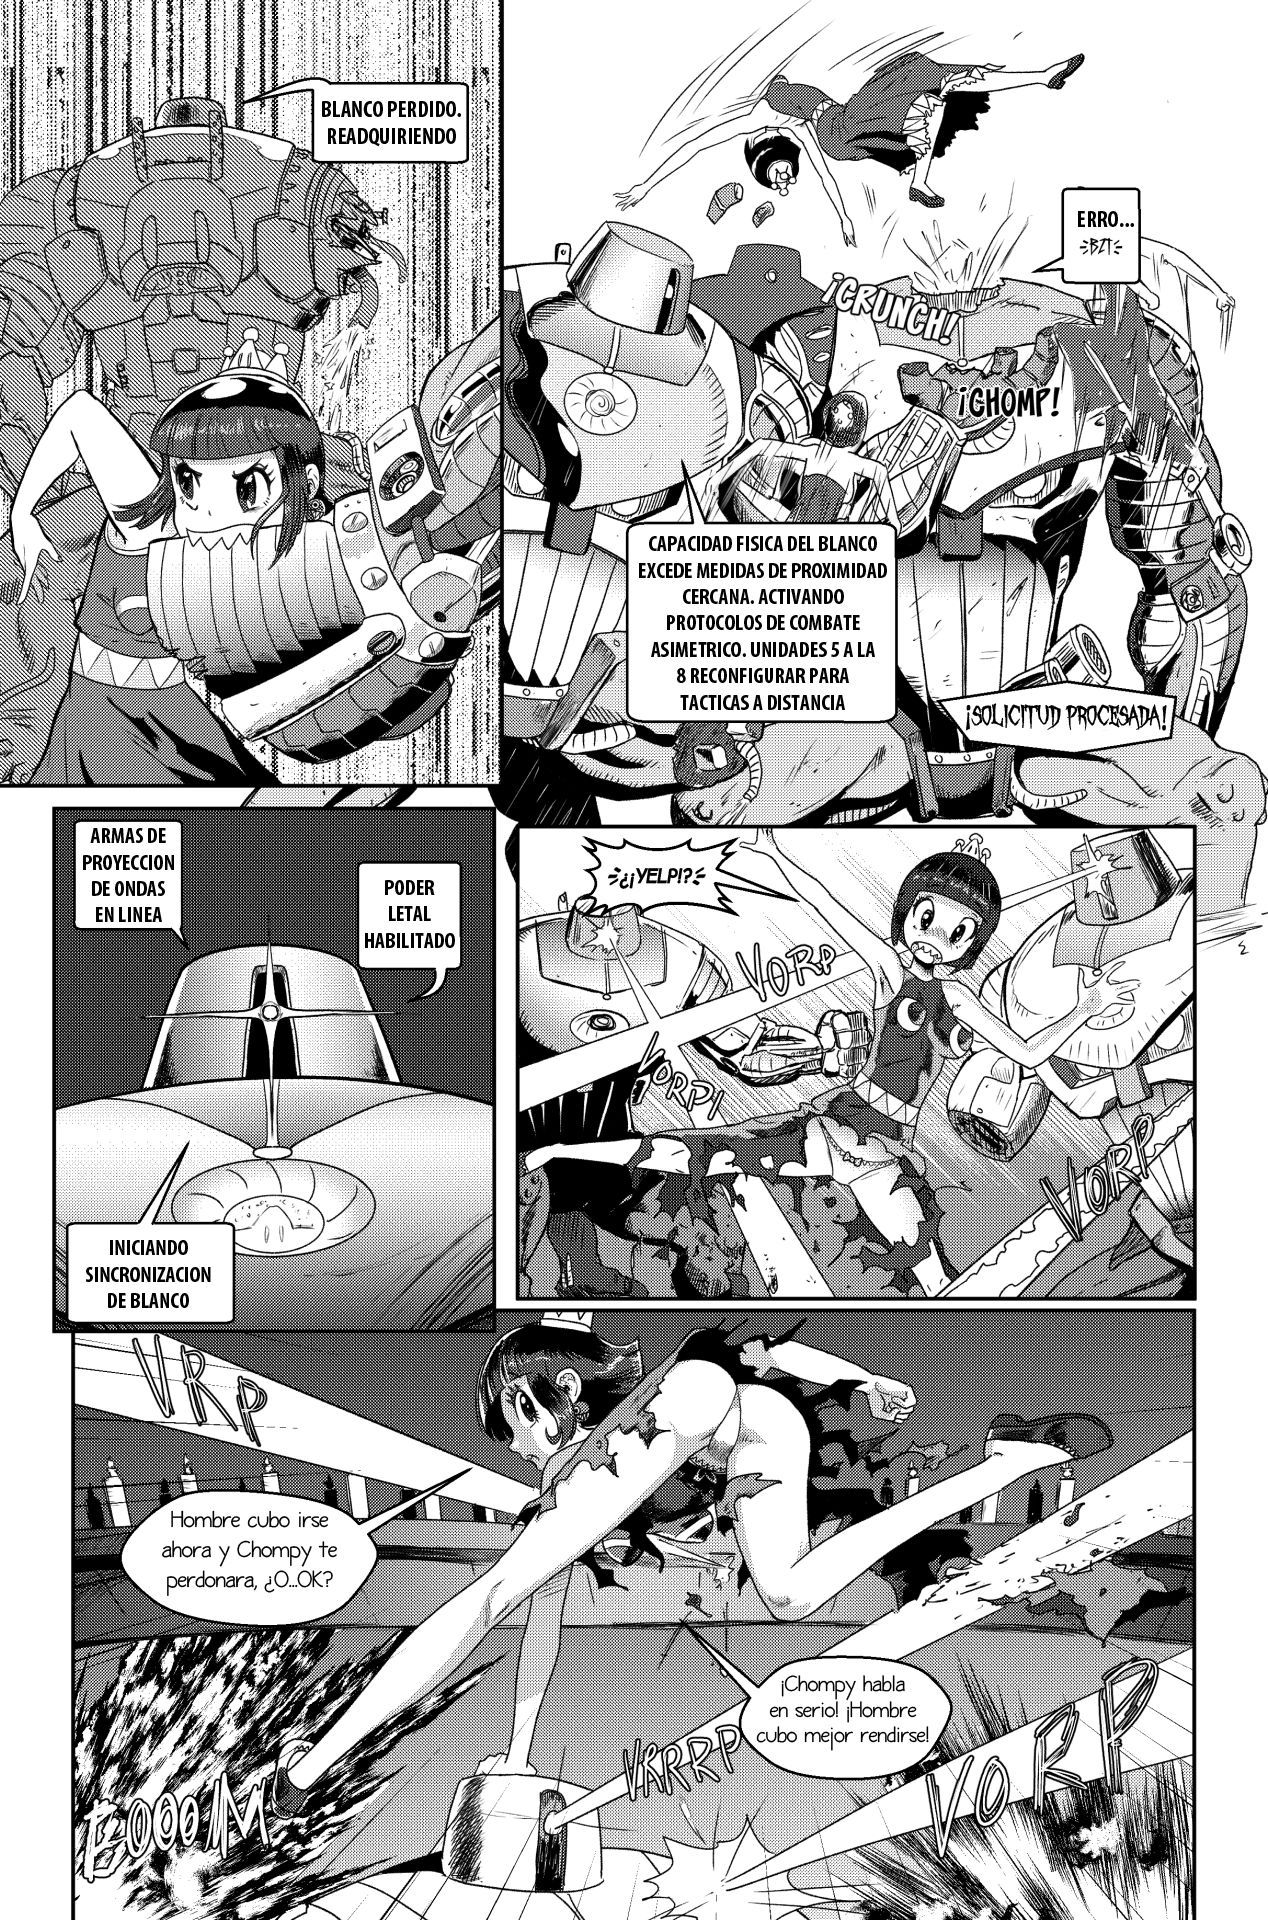 [Pencils] Bowsette Saga Vol.1 Y Vol.2 Completos - Vol.3 En Progreso (Mario Bros.) [Spanish] by Arkoniusx 46